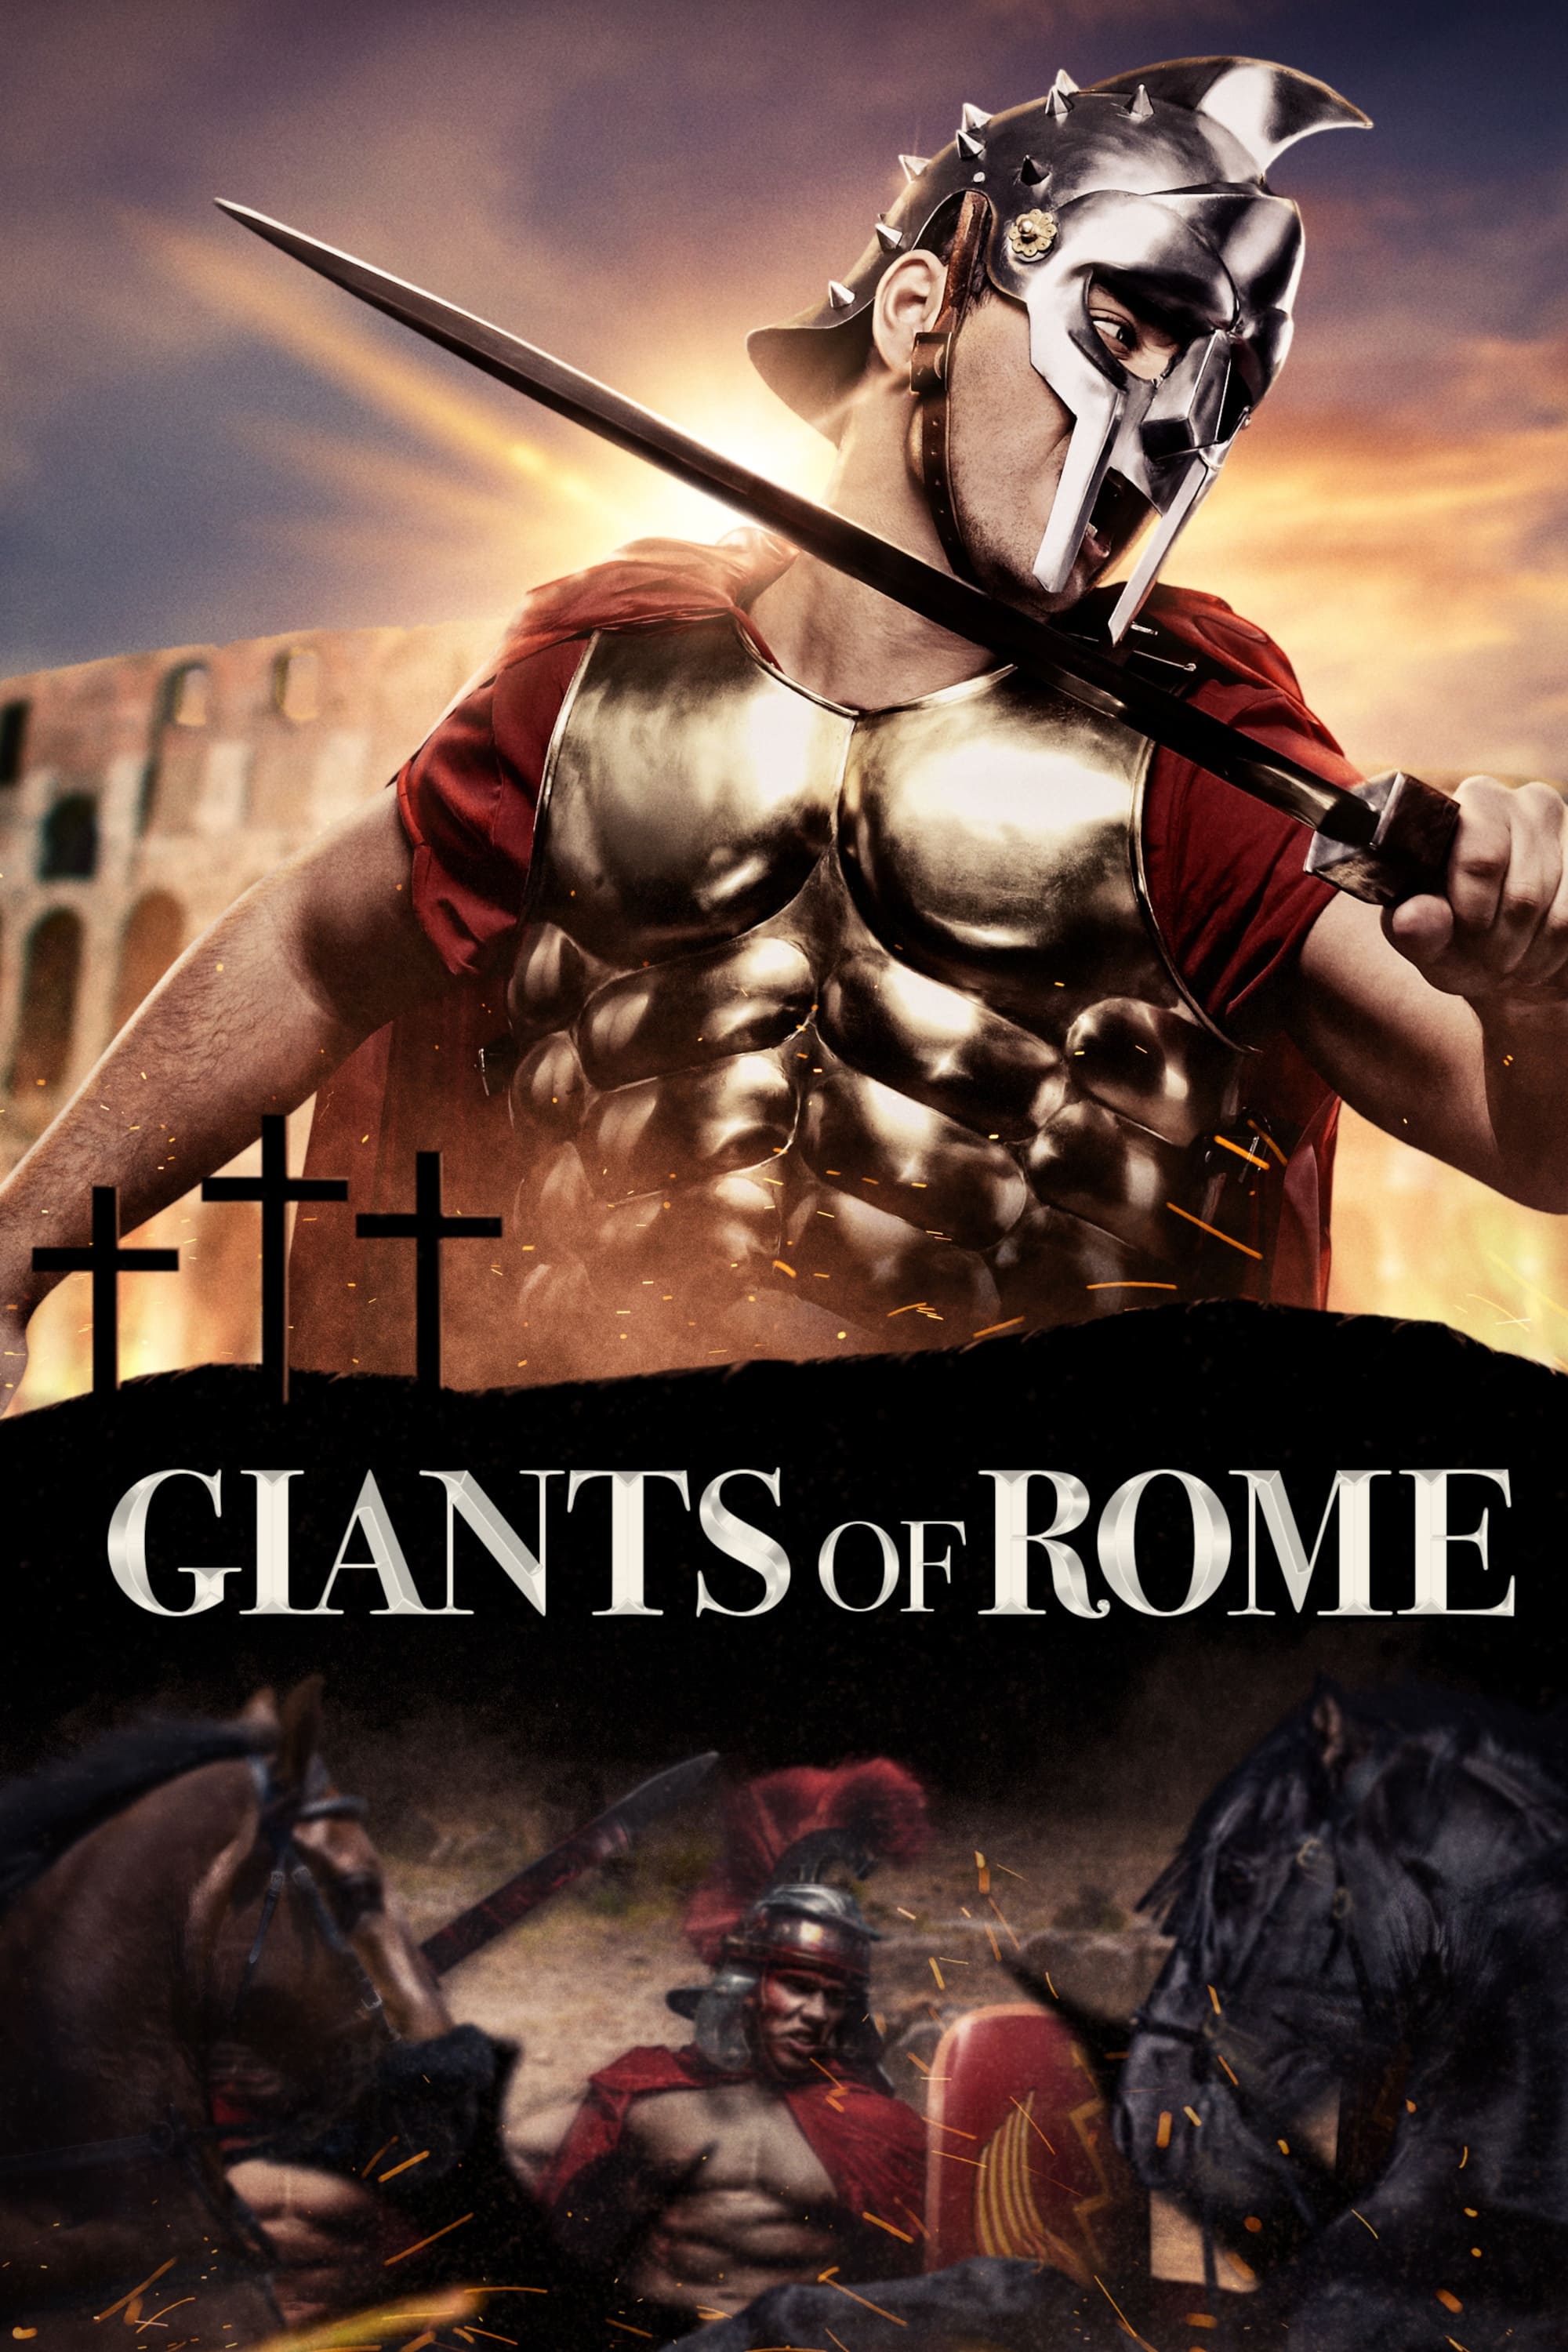 Giants of Rome (1964)